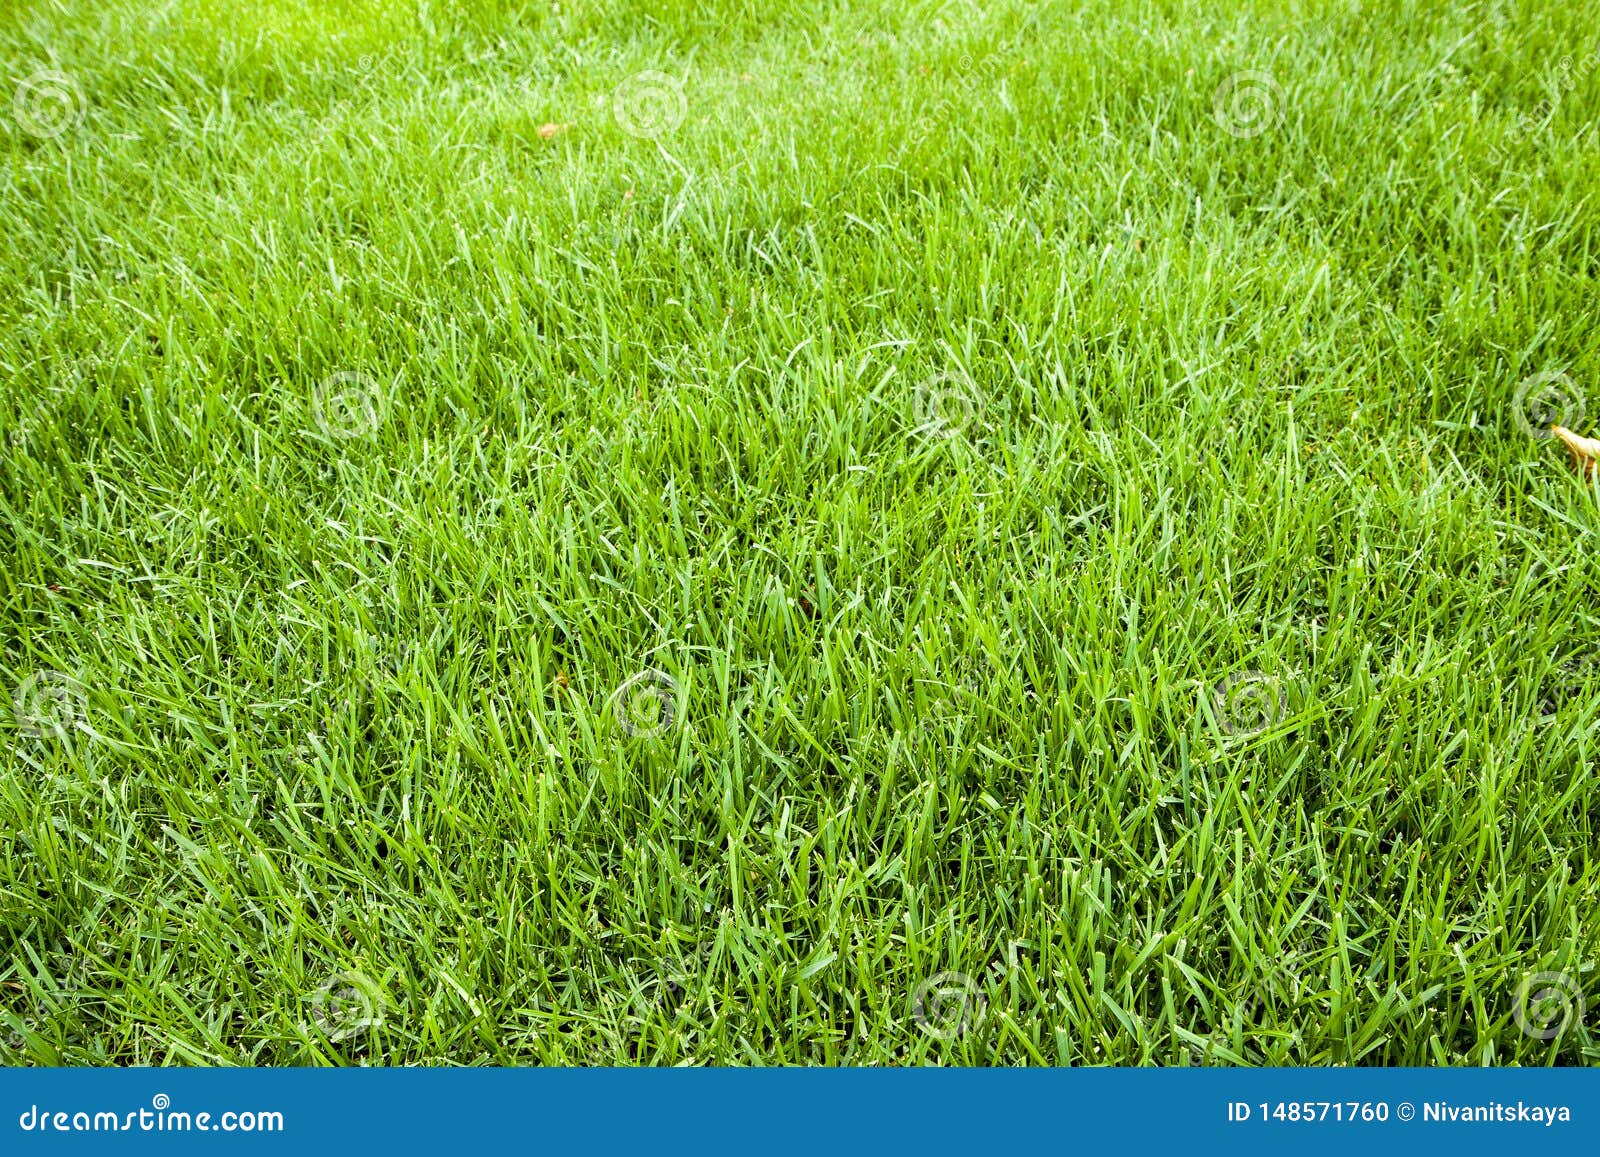 Grass Texture. Freshly Cut Green Grass Background. Natural Grass